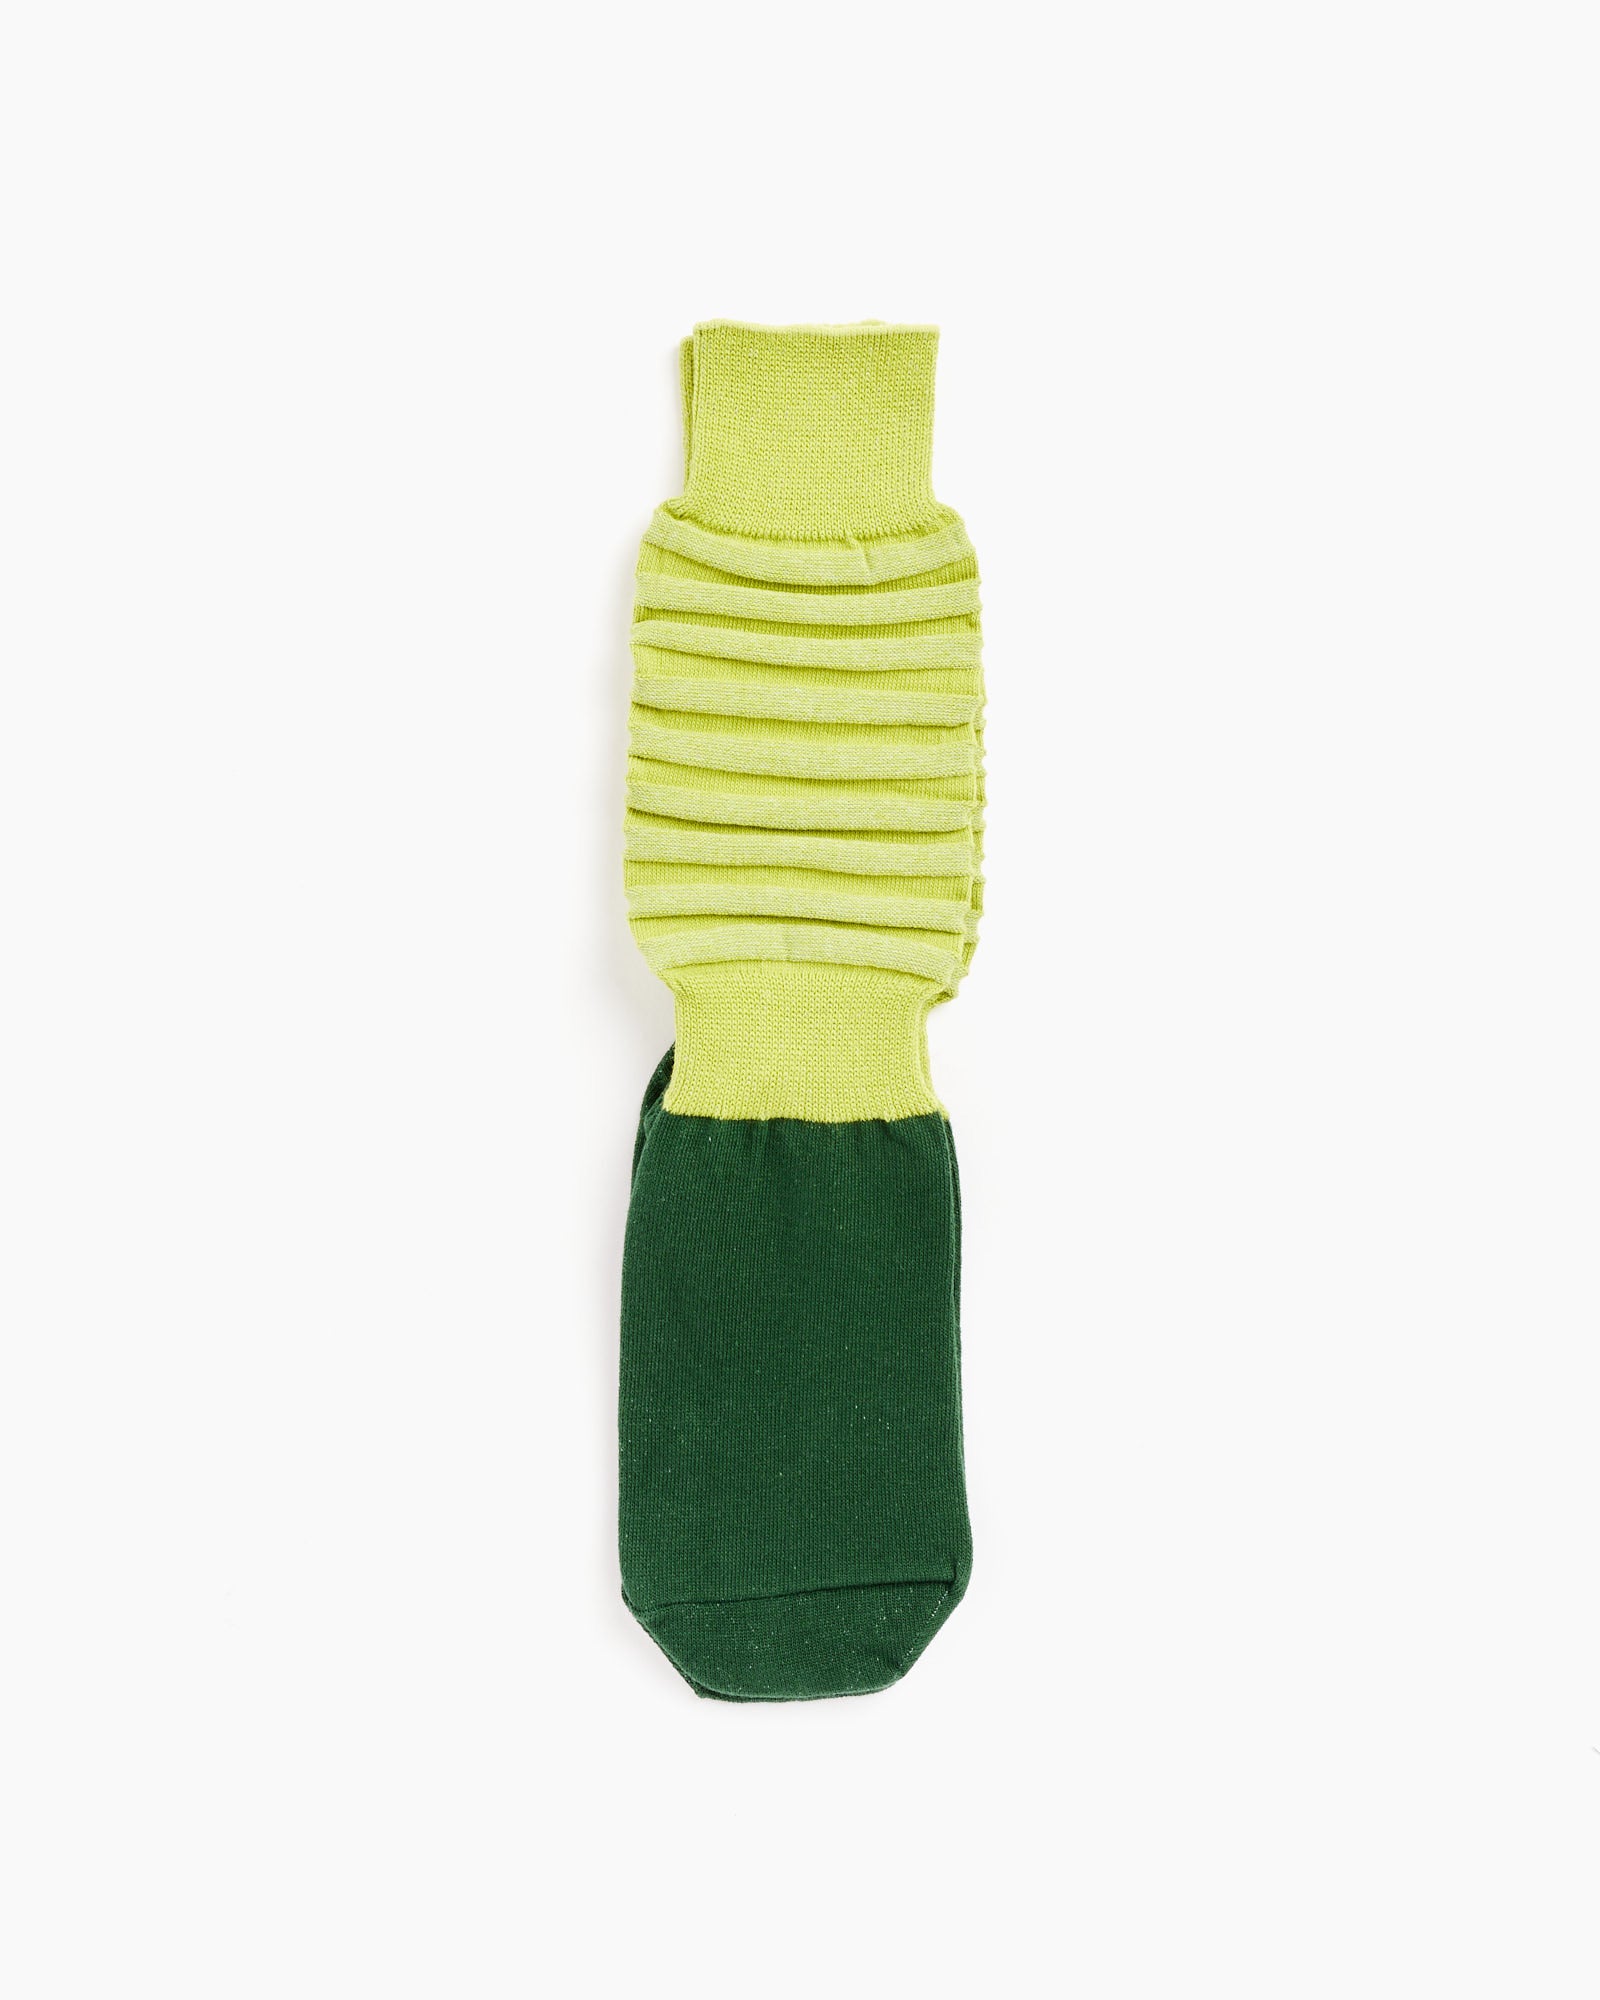 Fruitful Socks in Green Apple